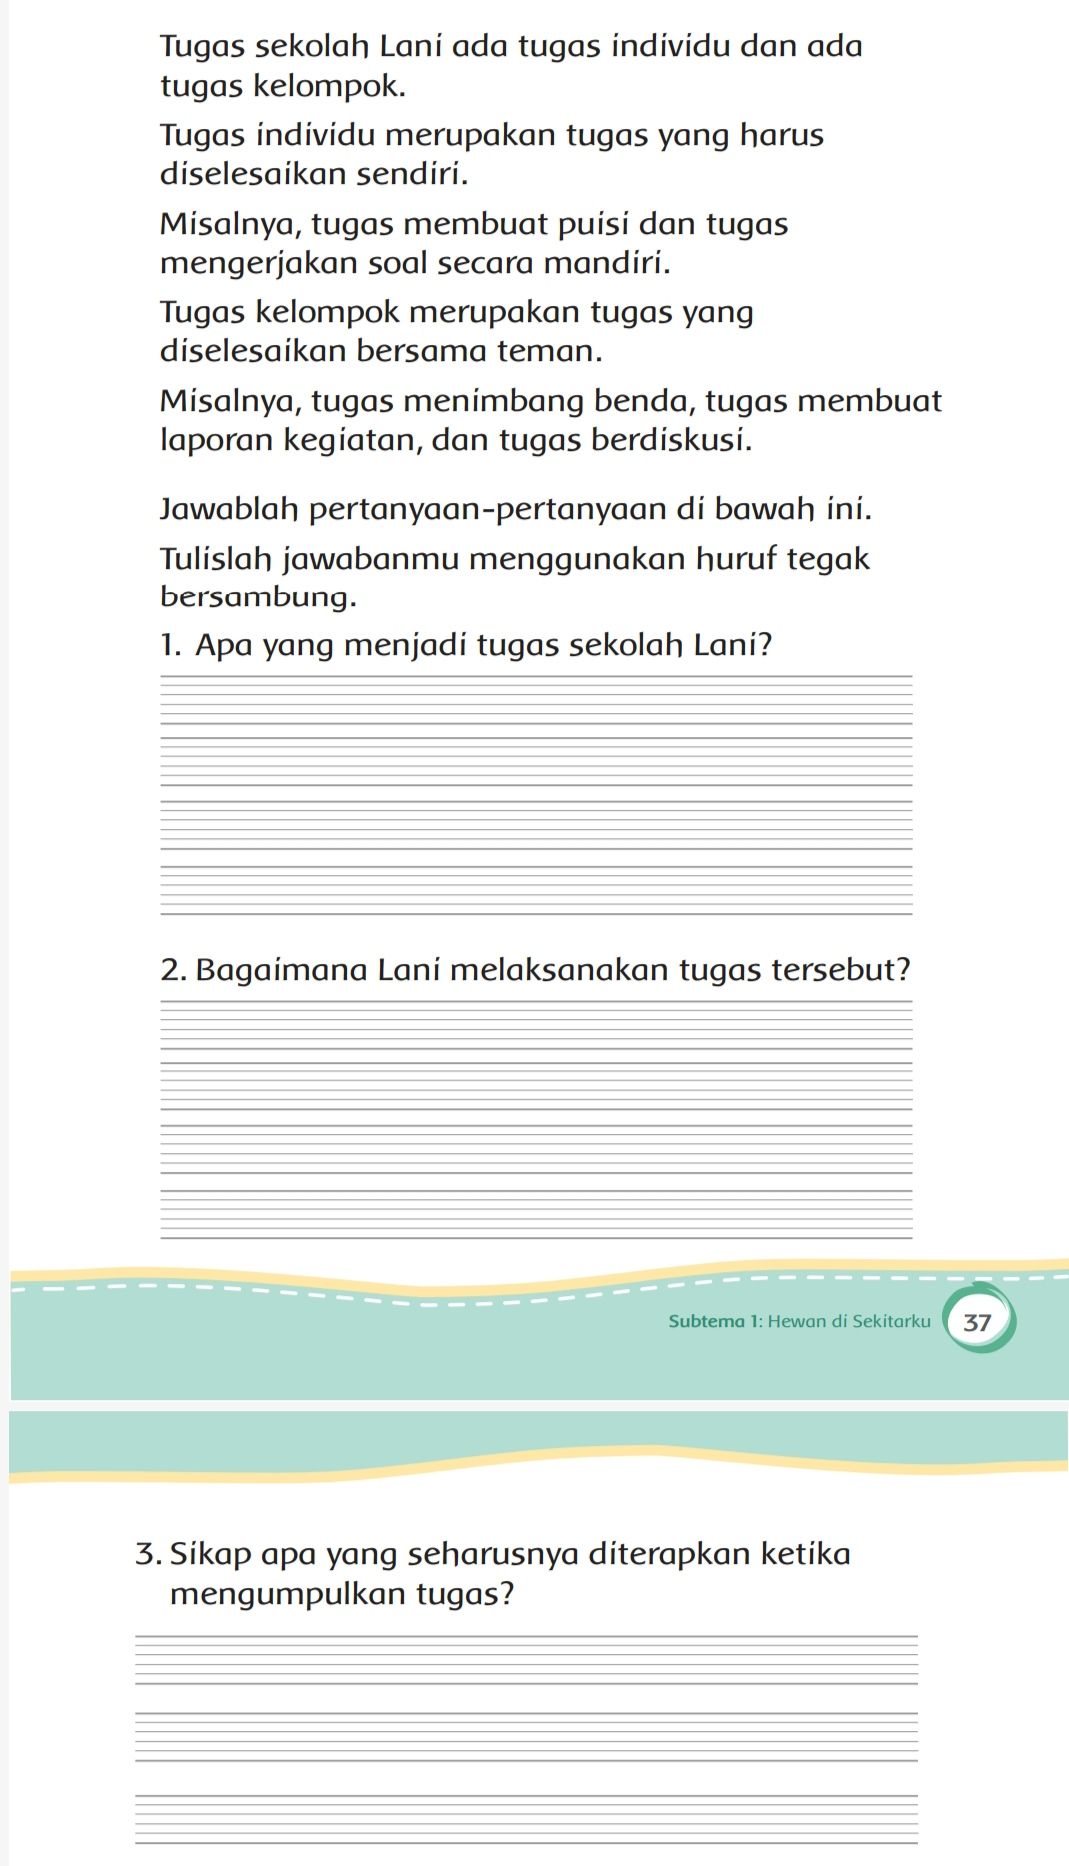 Kunci Jawaban Tema 6 Kelas 2 Halaman 36 37 38 Buku Tematik Subtema 1 Pembelajaran 6 Tentang Tugas Sekolah Lani Metro Lampung News